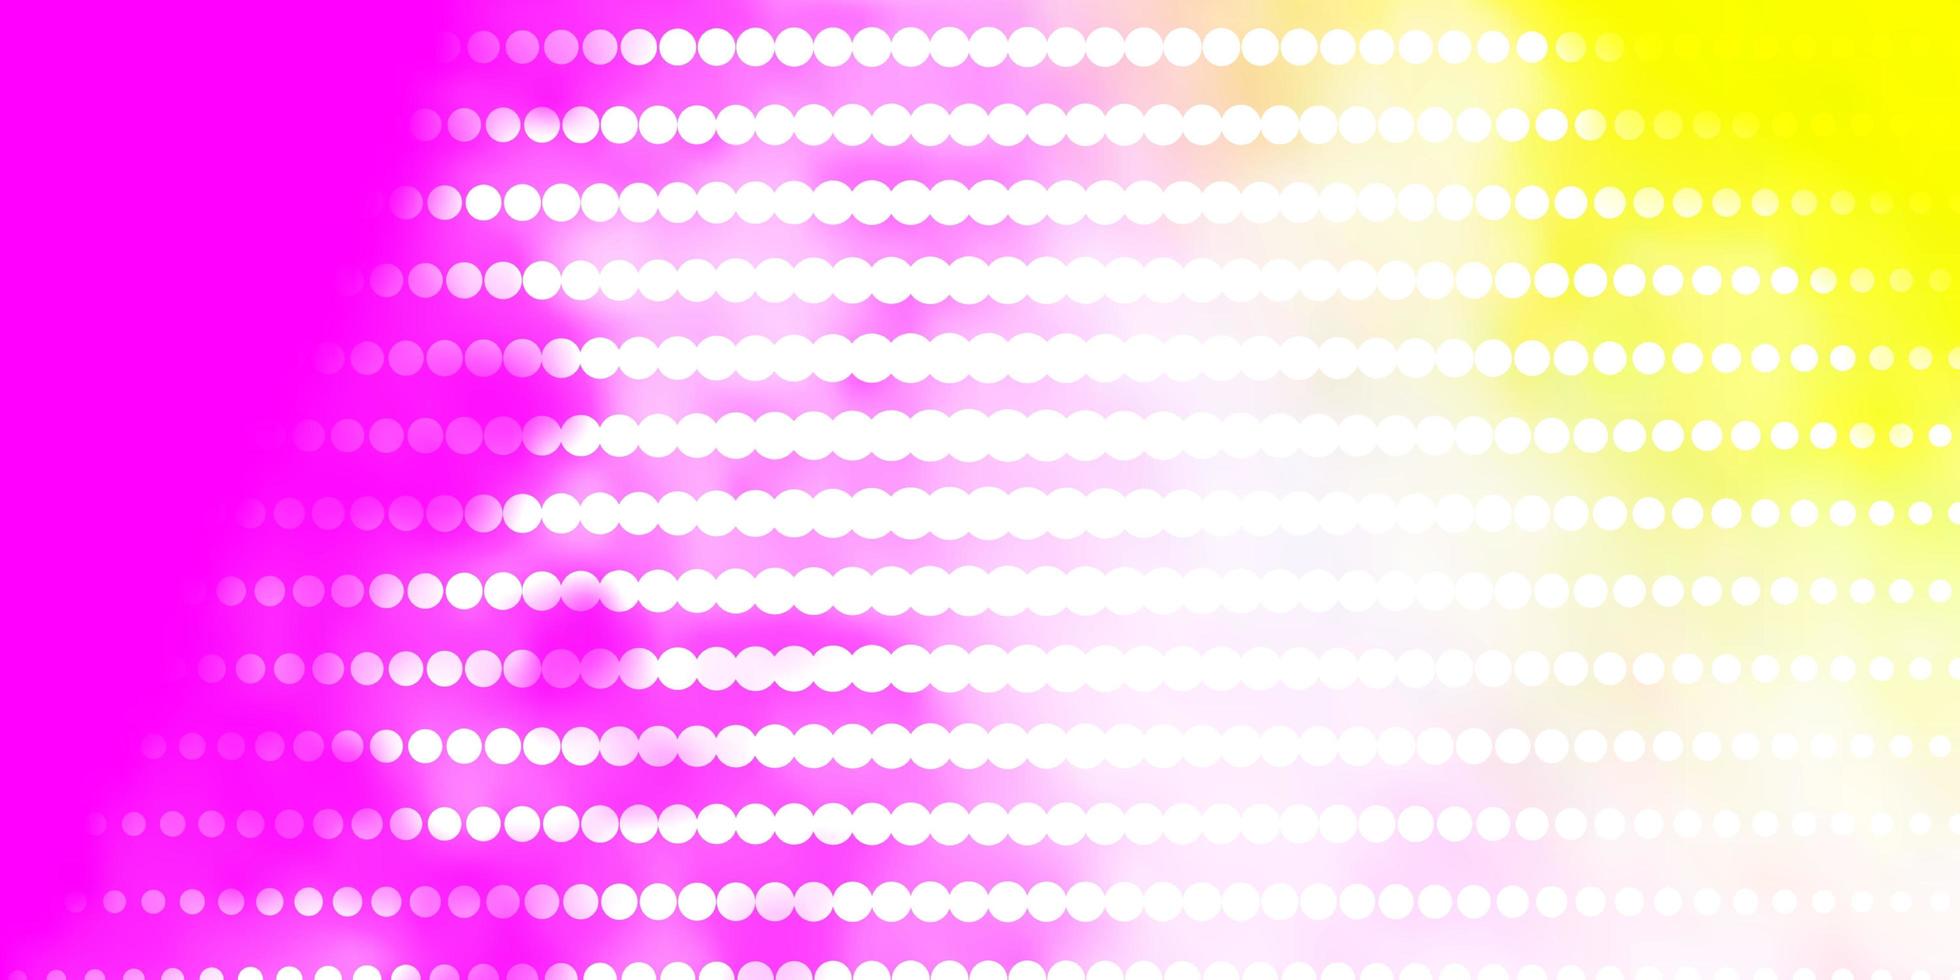 ljusrosa, gul vektorbakgrund med cirklar. vektor